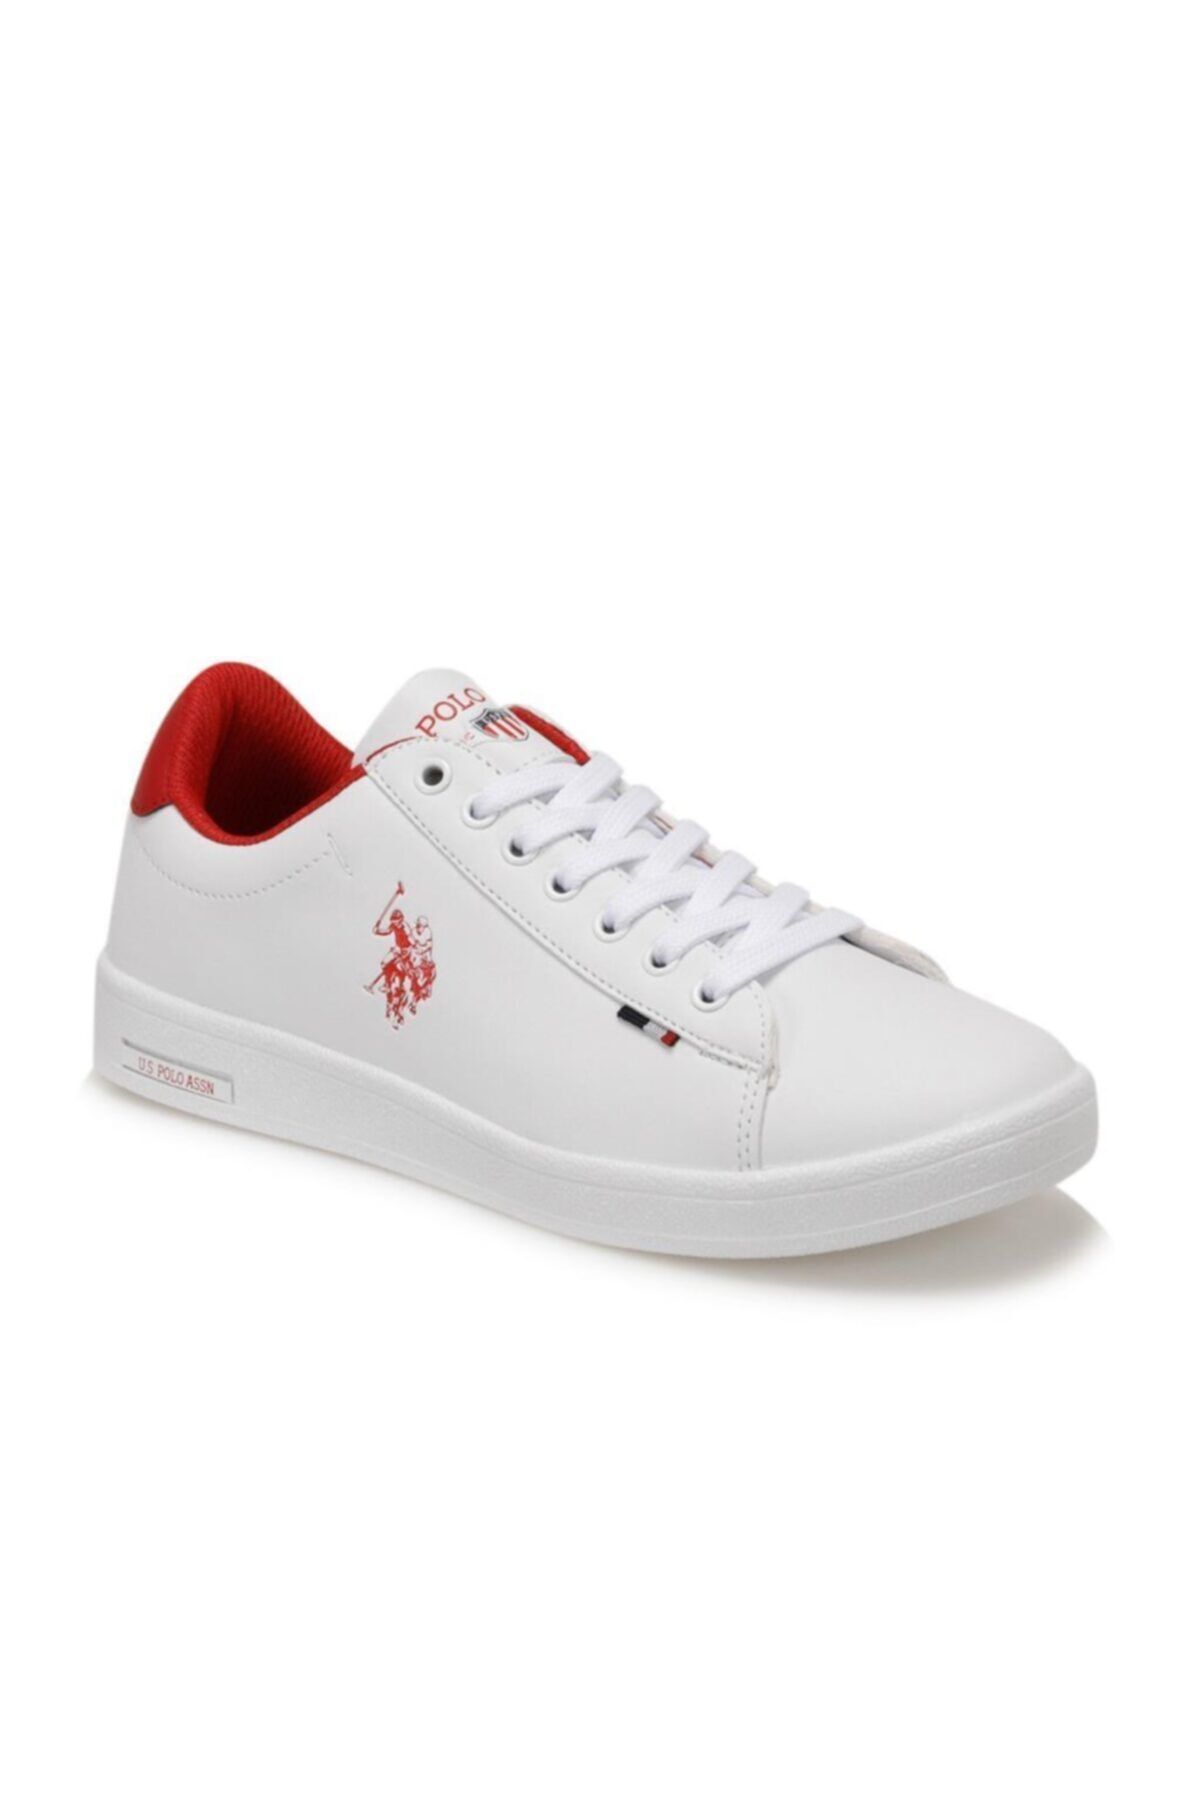 U.S. Polo Assn. FRANCO DHM Beyaz  Sneaker Ayakkabı 100548973